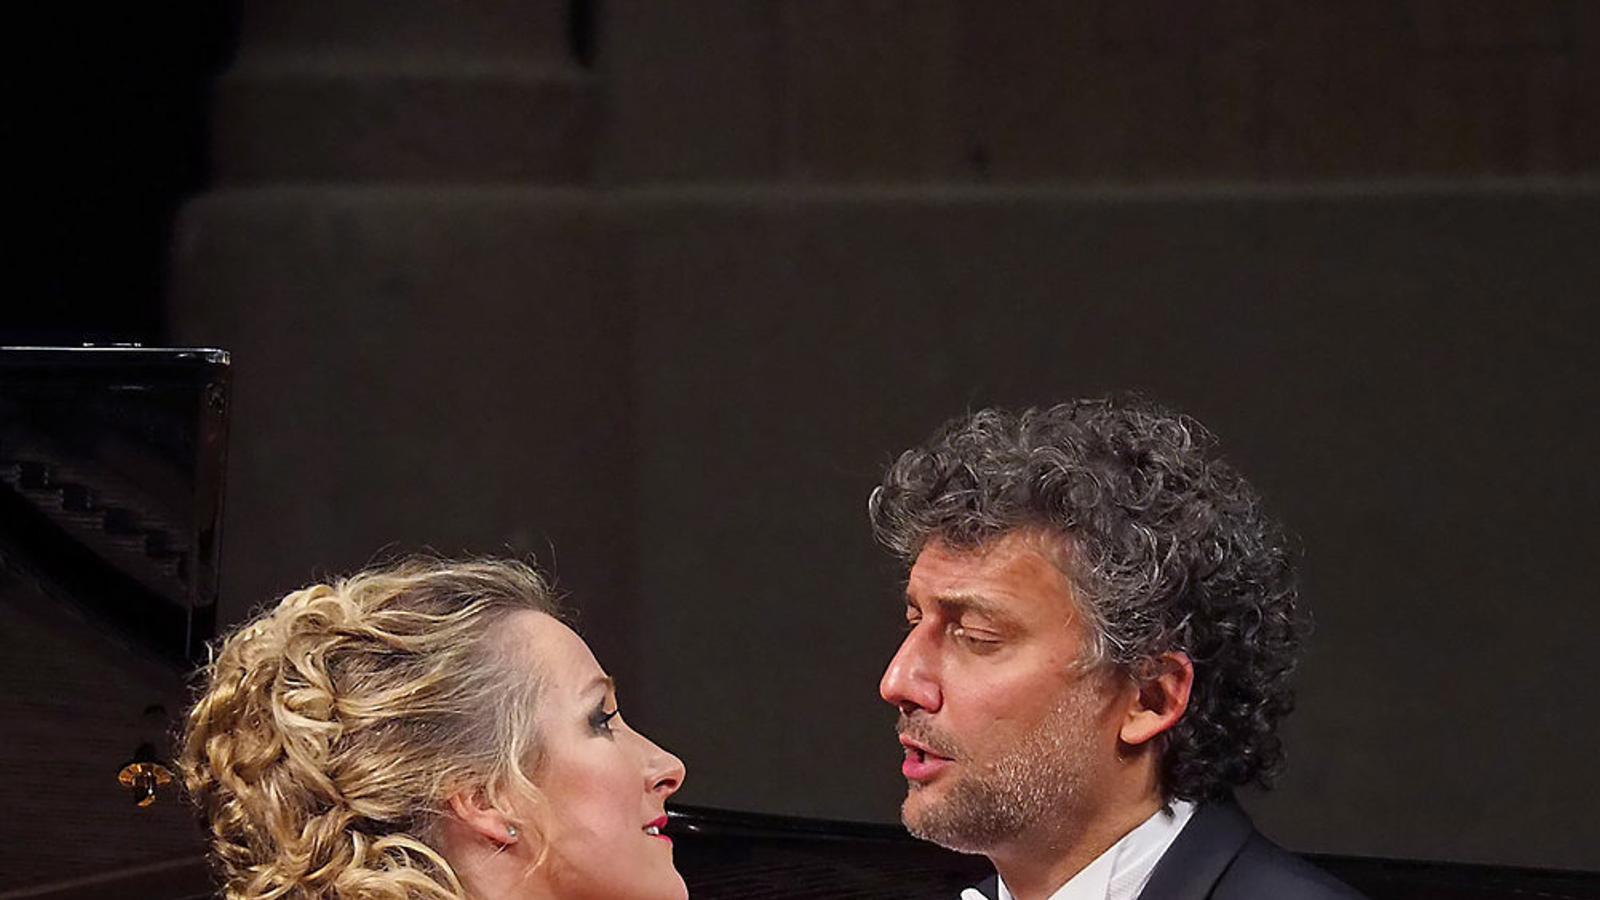 Damrau i Kaufmann van subratllar les seves interpretacions al recital del Palau de la Música amb una marcada teatralitat dels gestos. / ANTONI BOFILL